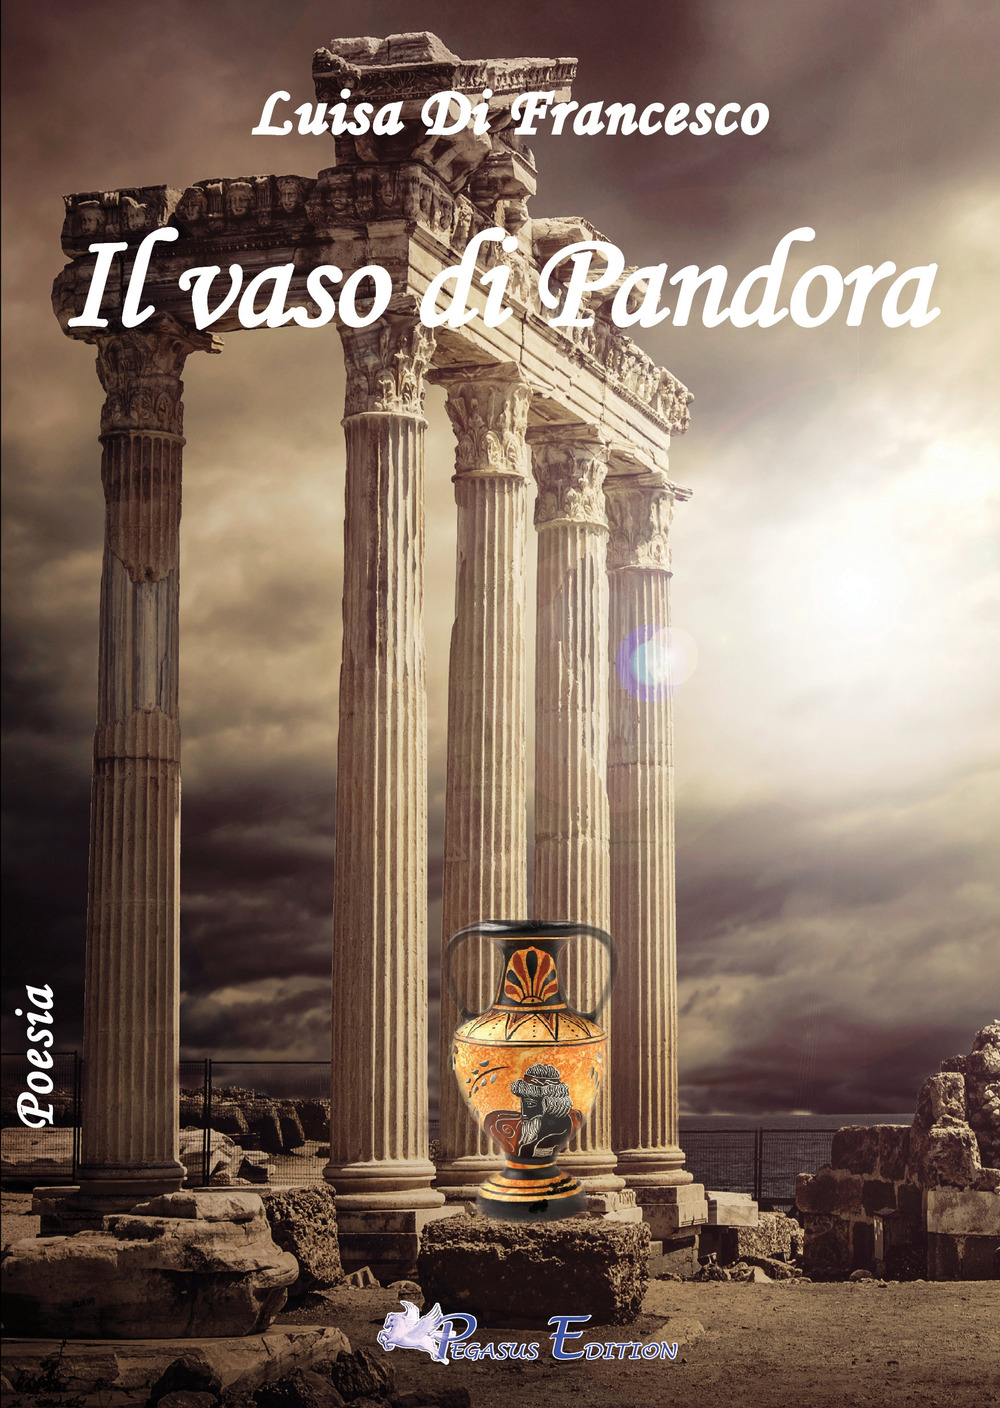 Il vaso di Pandora